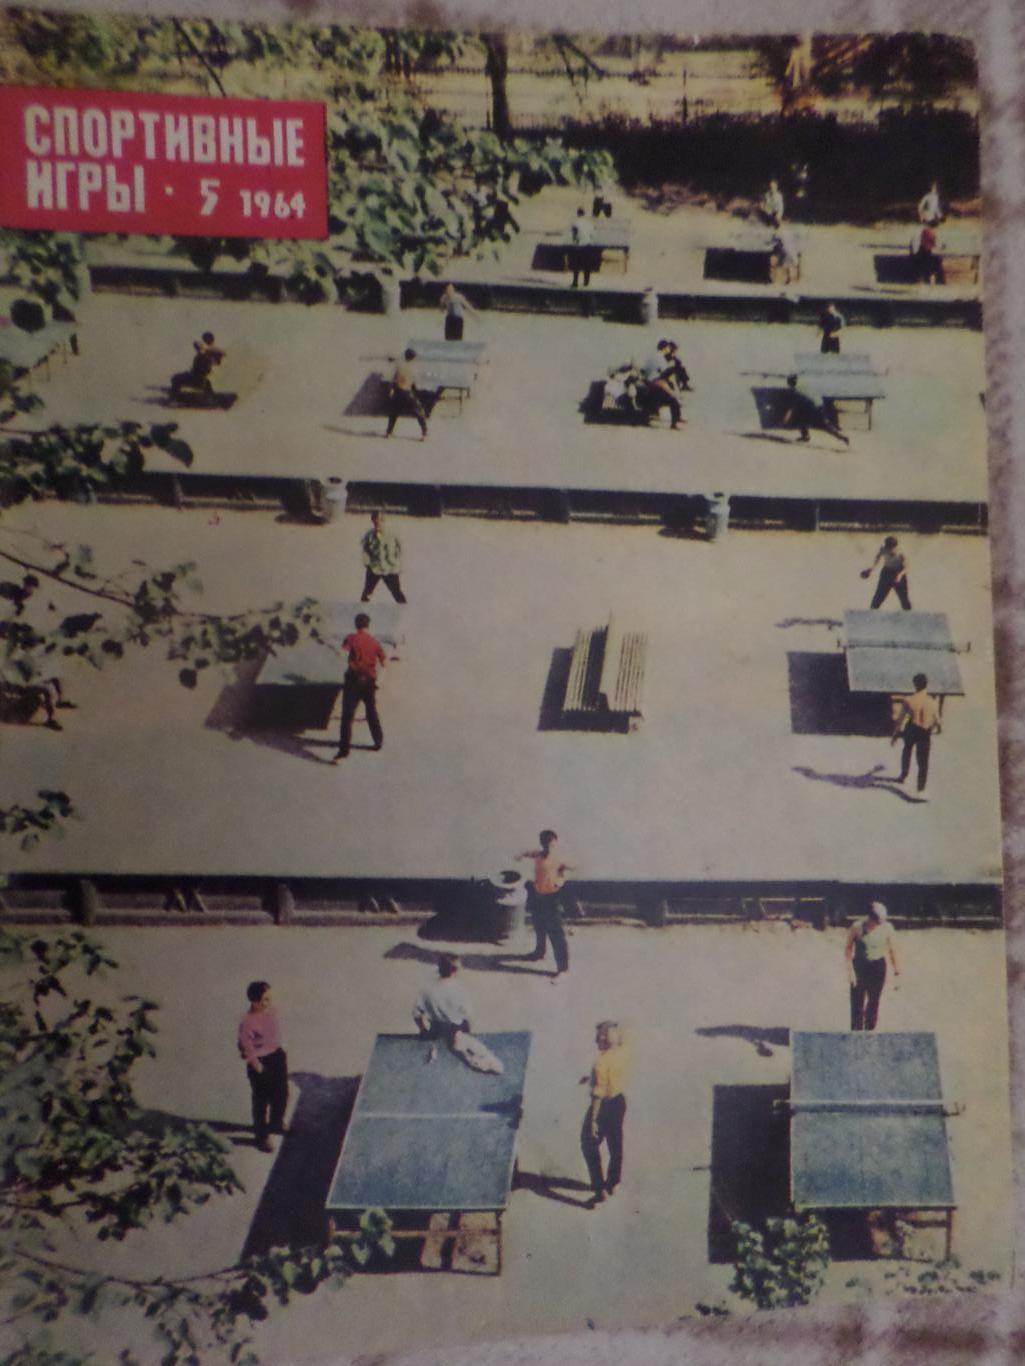 журнал Спортивные игры номер 5 1964 г